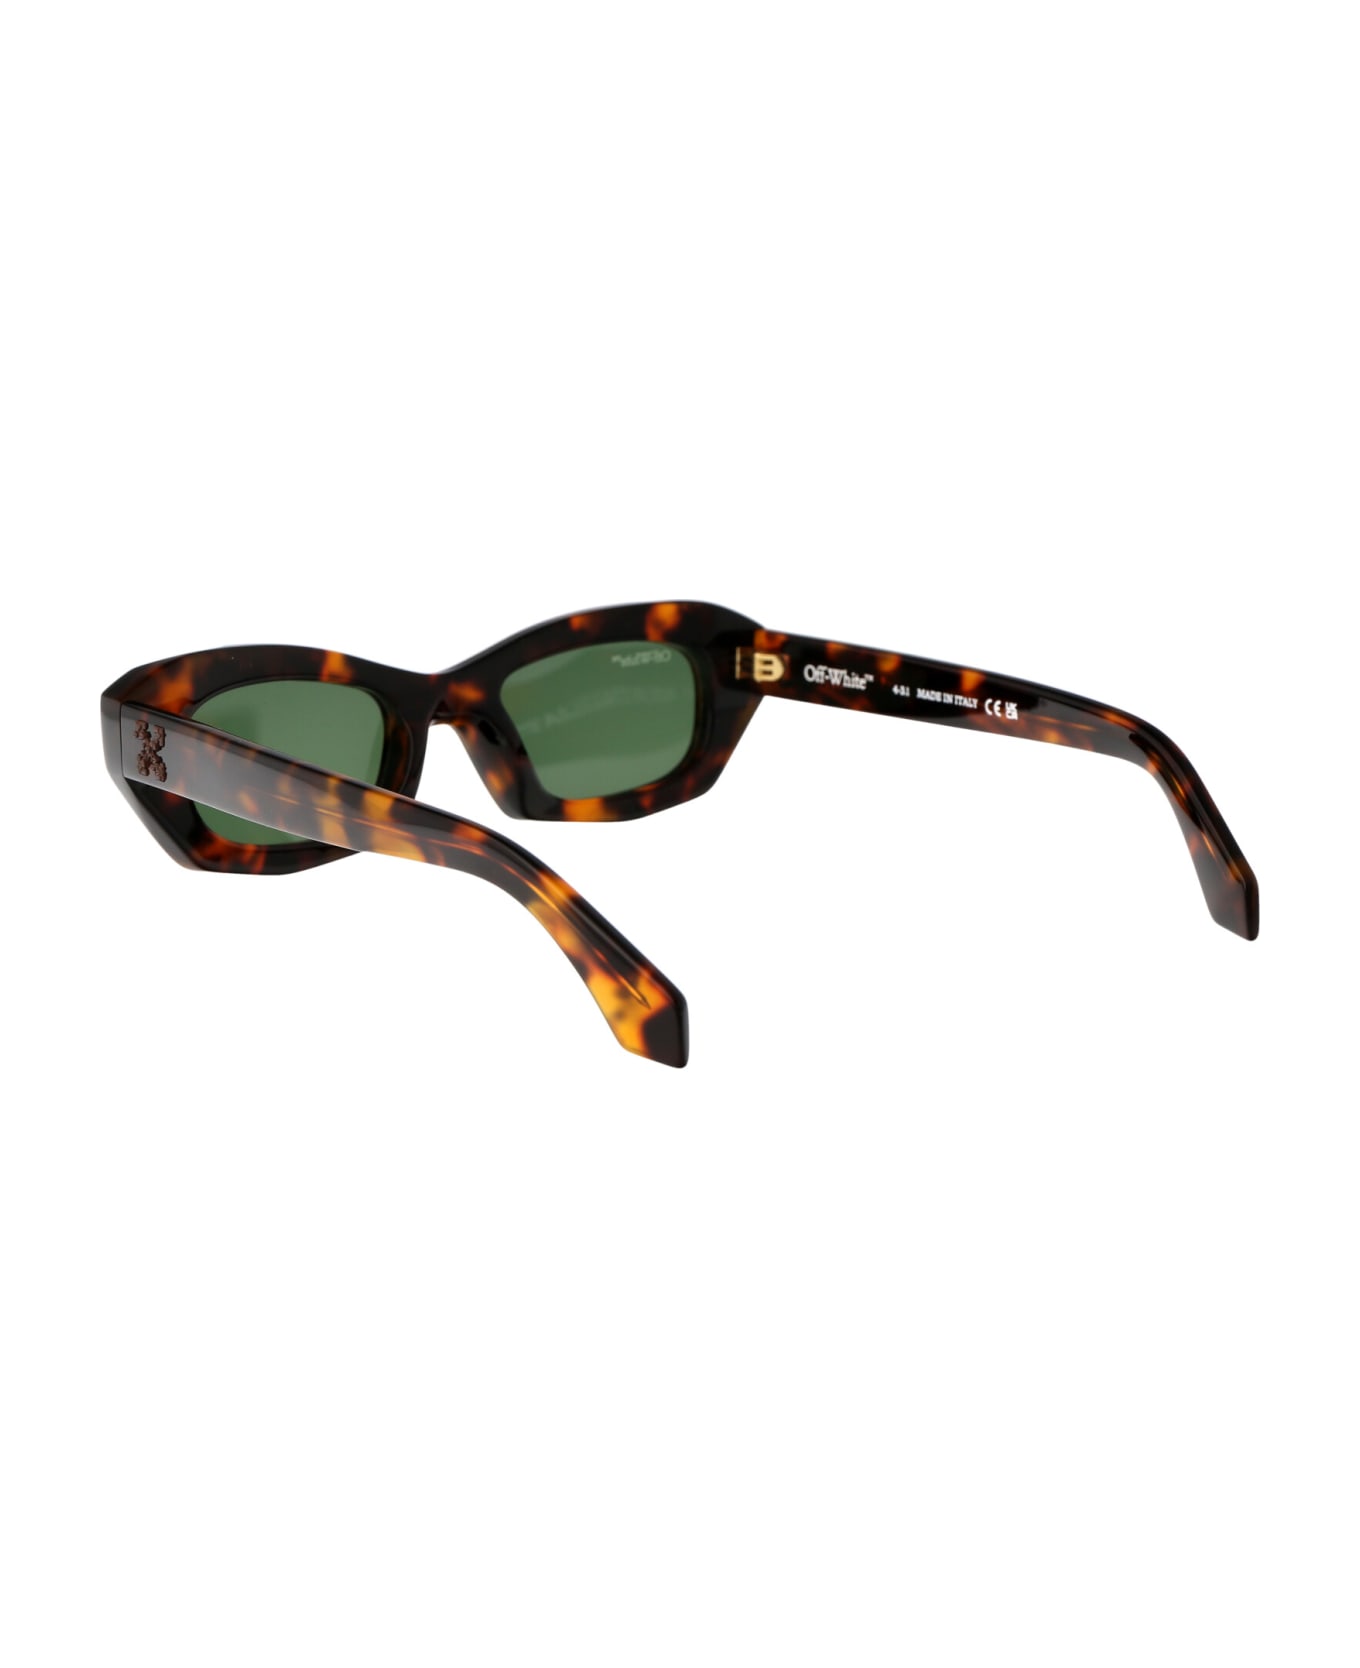 Off-White Venezia Sunglasses - 6055 HAVANA